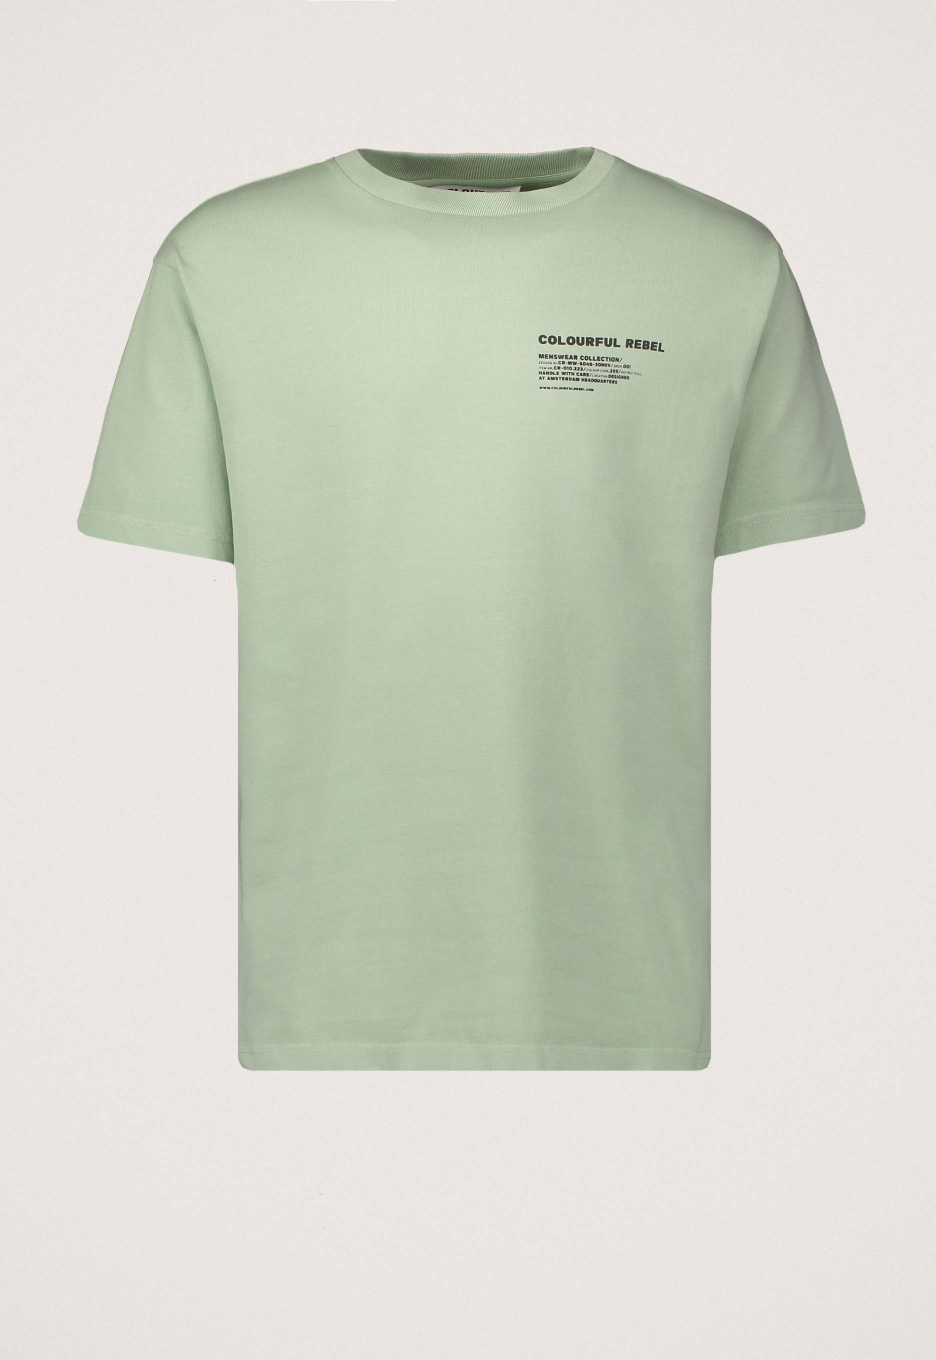 Plunderen beoefenaar bloem Colourful Rebel Branding T-shirt Green Mint | Open32.nl